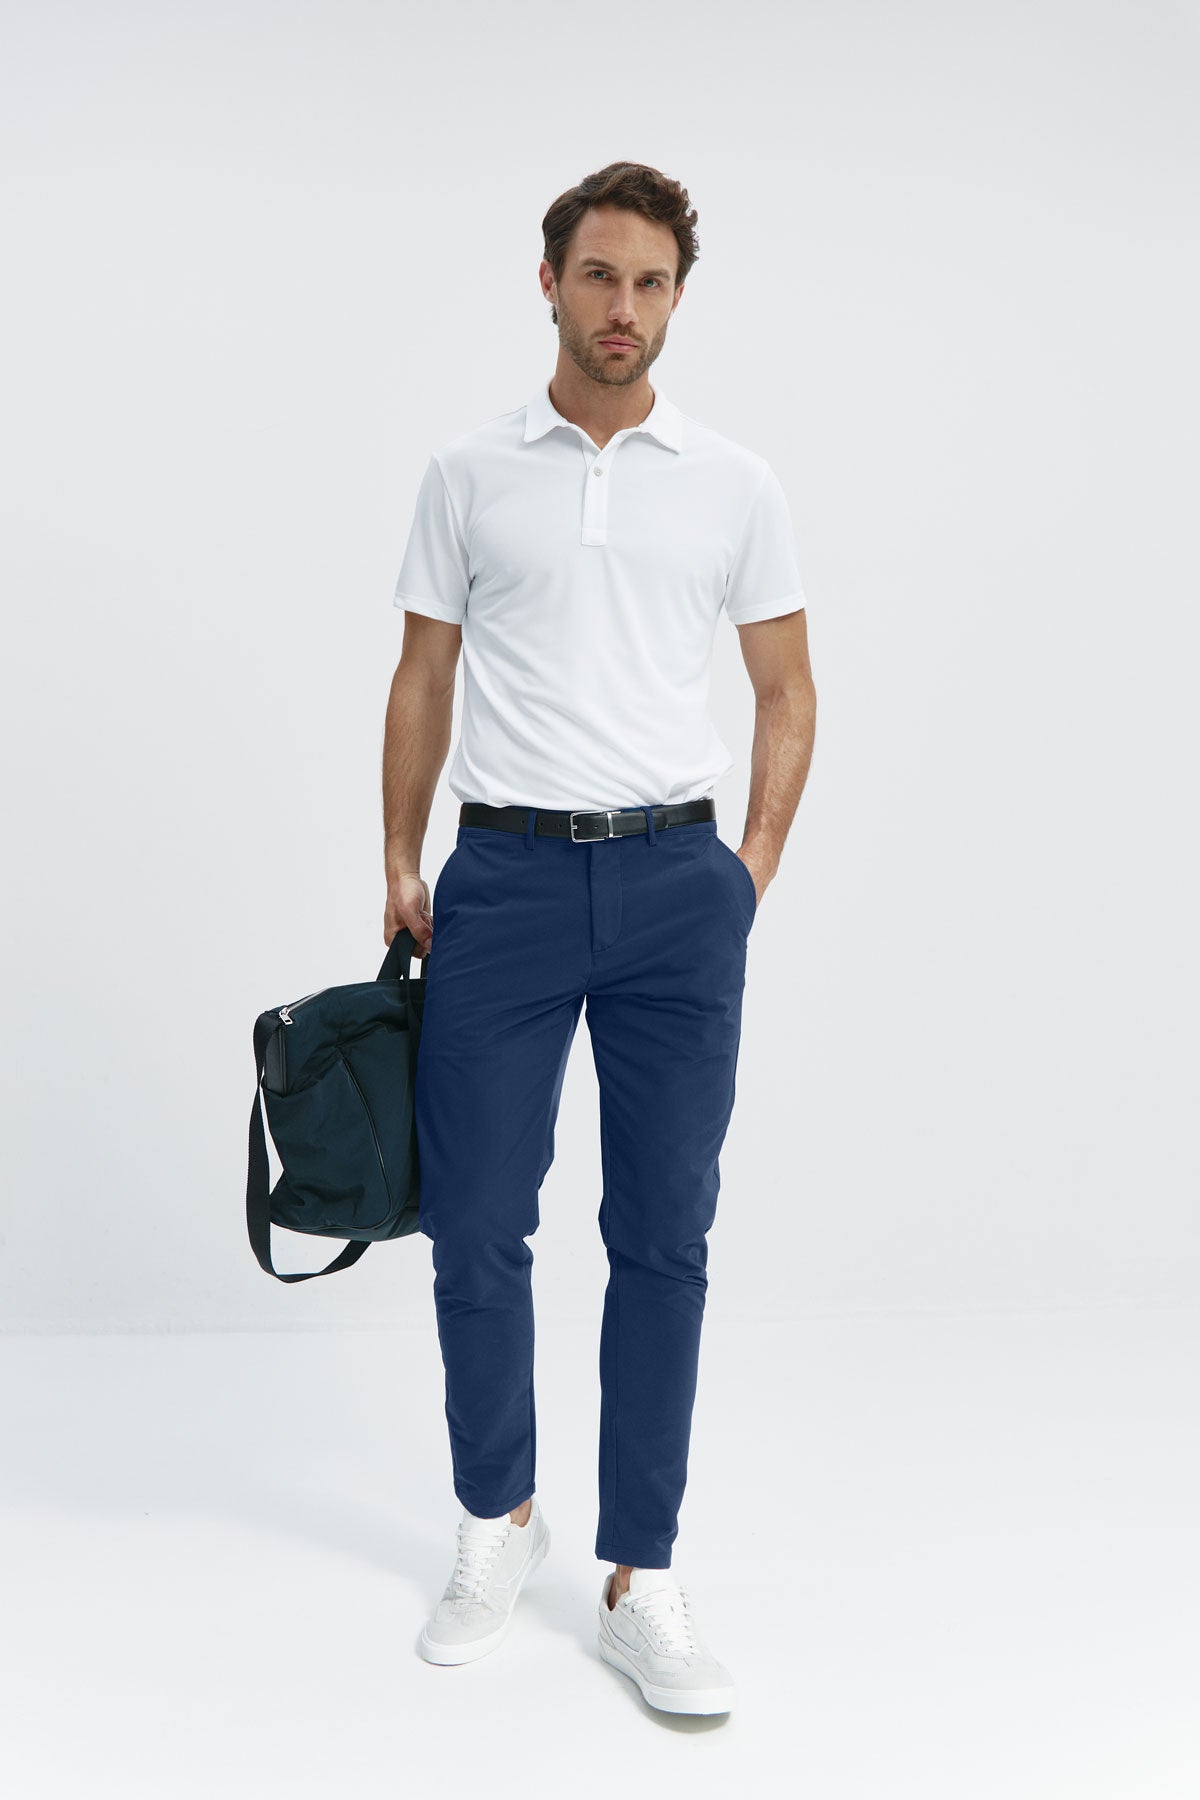 Pantalón para hombre azul marino: Pantalón chino slim azul marino para hombre con tecnología termorreguladora Coolmax. Foto cuerpo entero